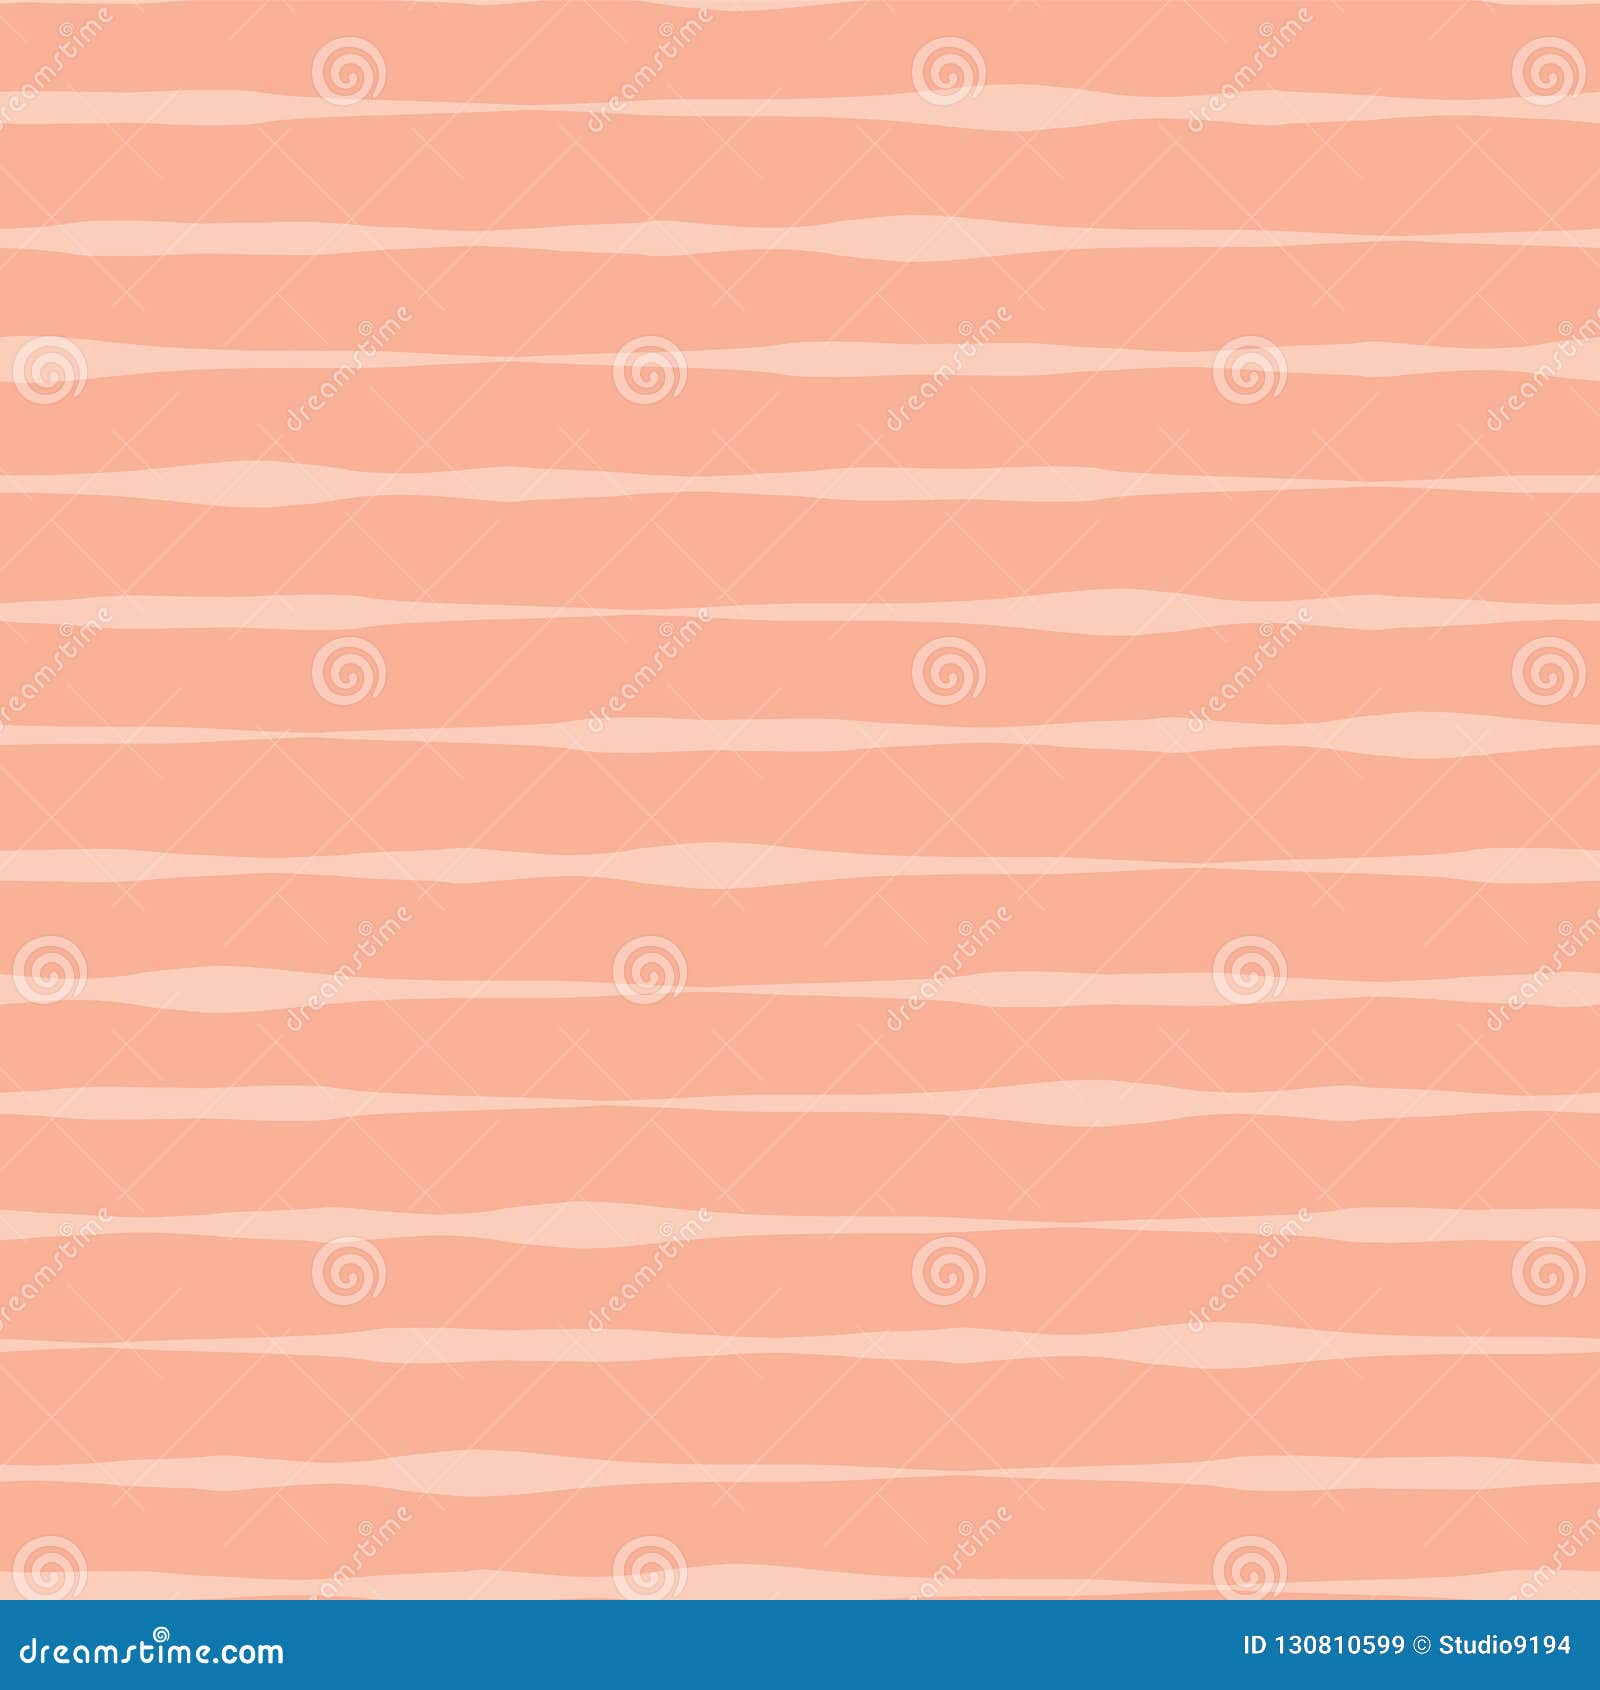 Hình nền vectơ trừu tượng liên tục hồng san hô cam mang đến cho bạn sự tinh tế và sáng tạo trong thiết kế. Hãy khám phá các họa tiết độc đáo và pha trộn màu sắc thông qua hình nền này.